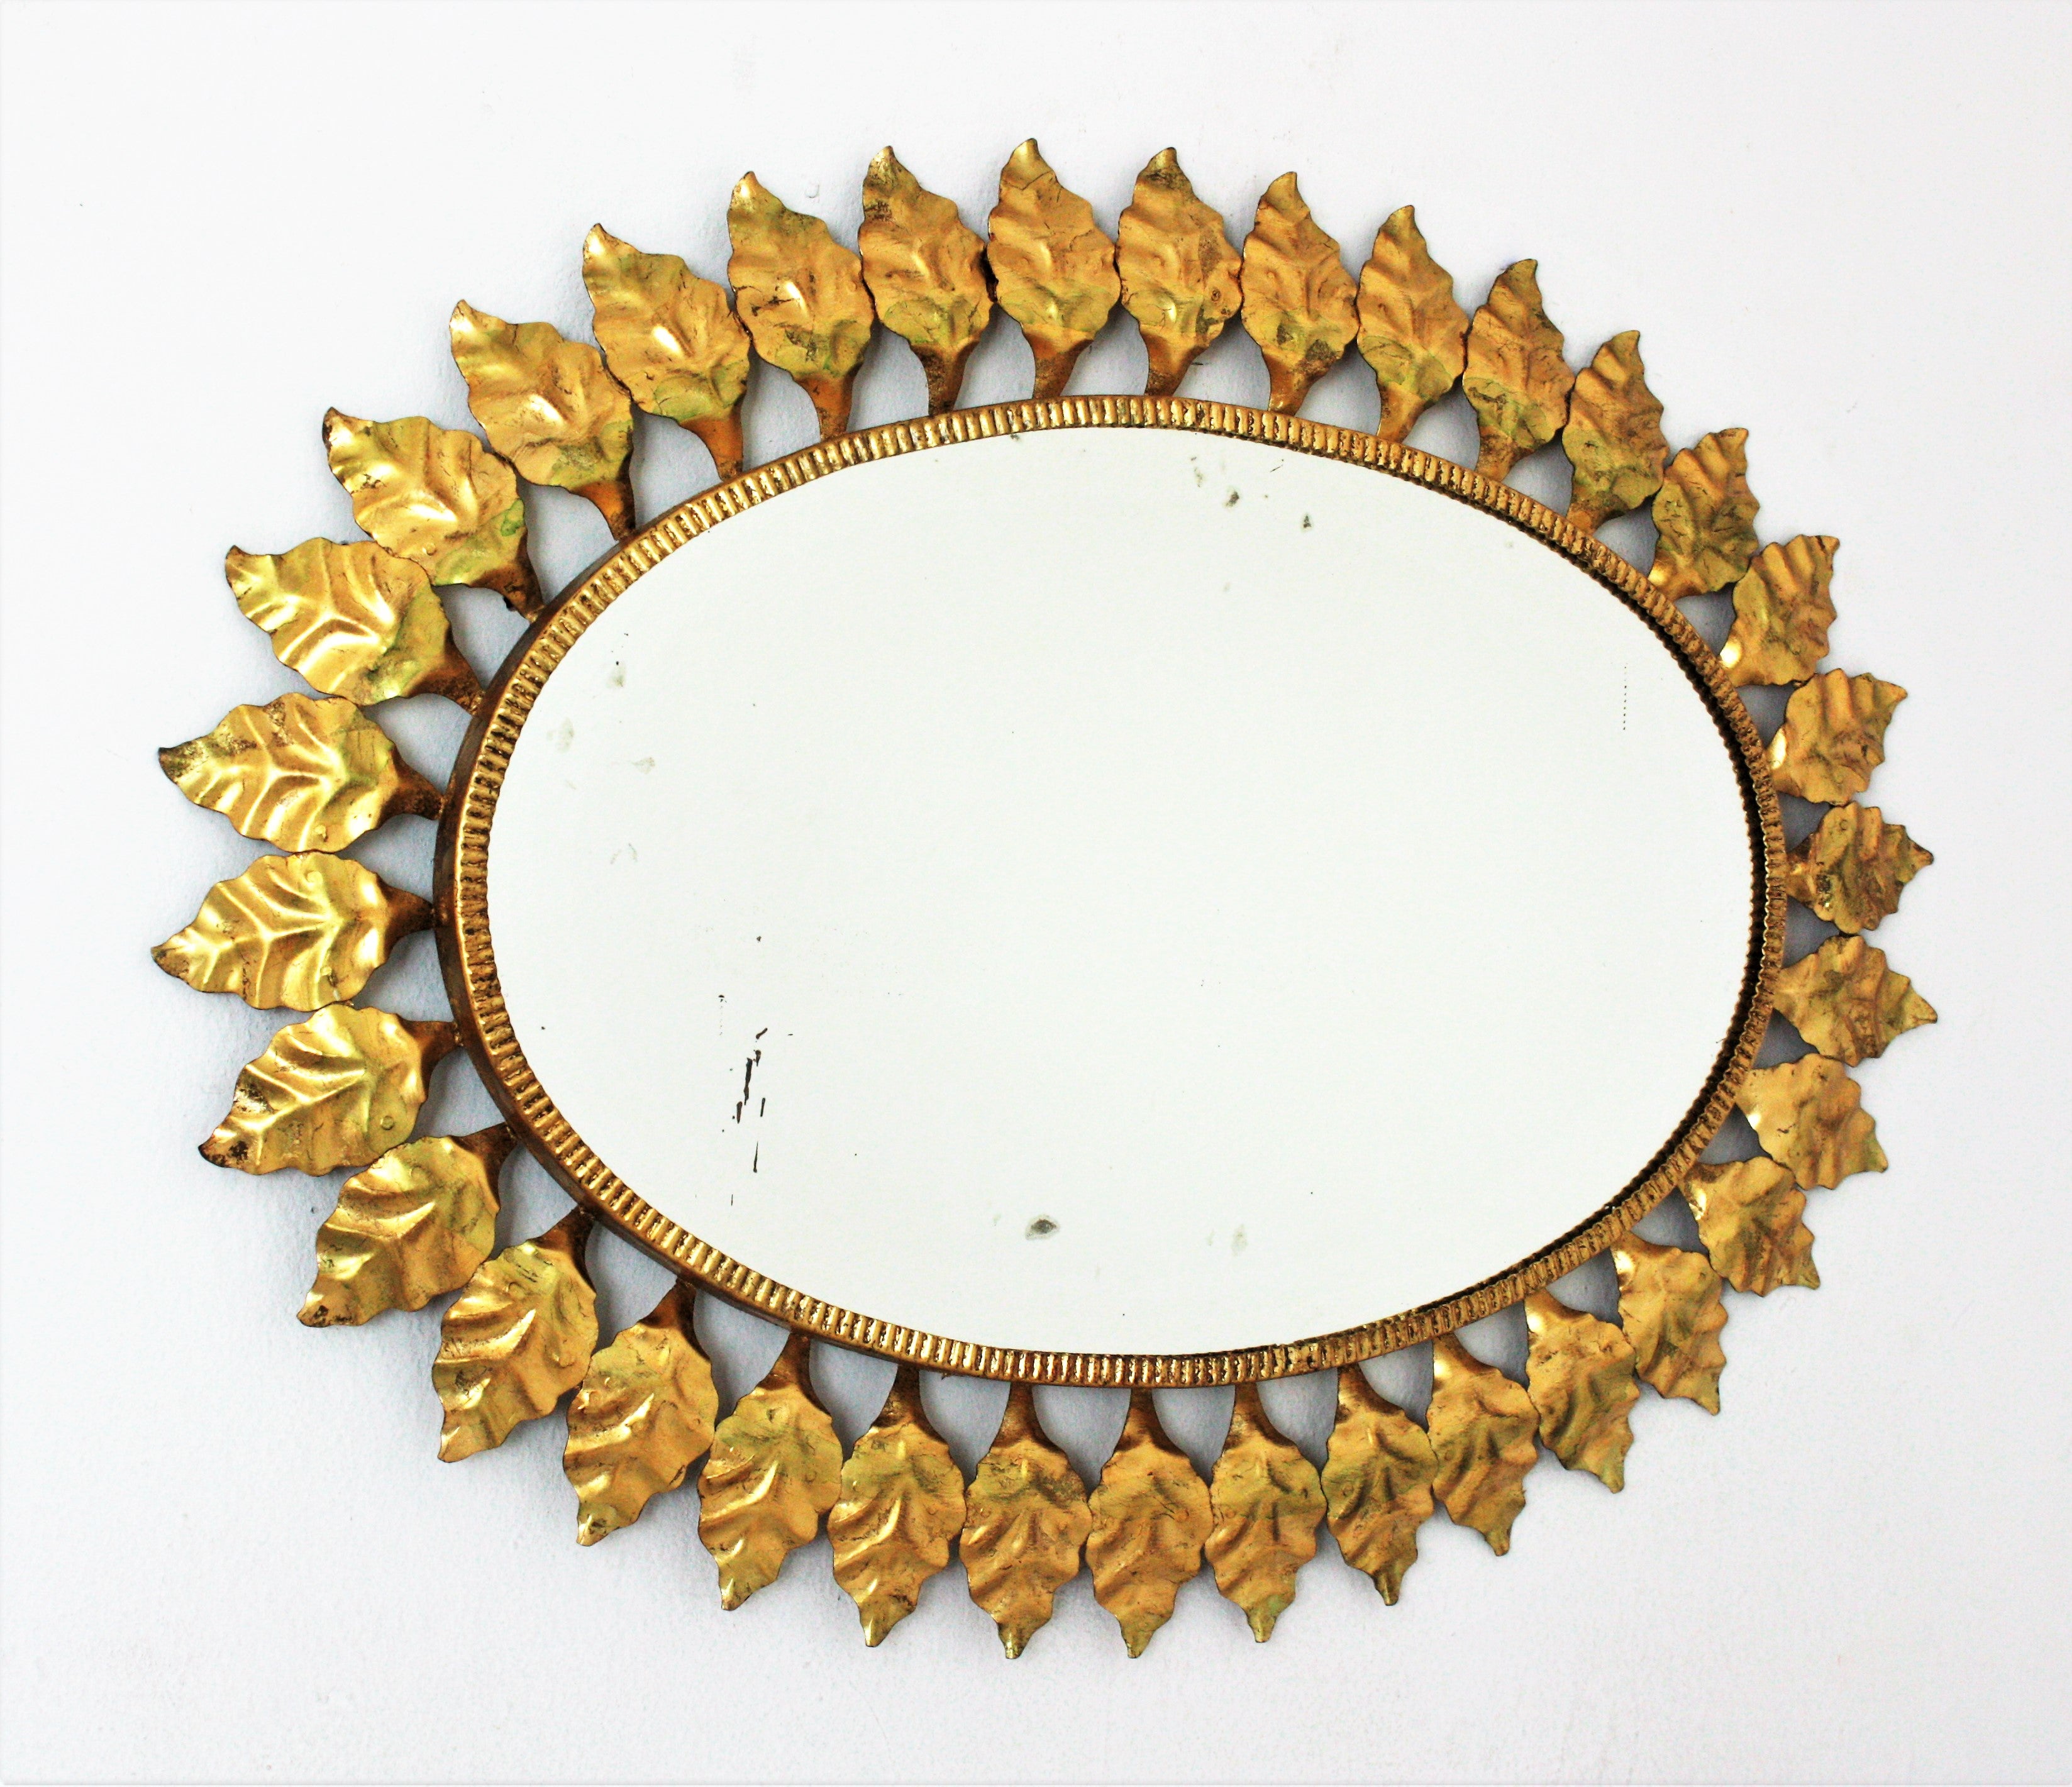 Grand miroir mural ovale en fer forgé de style moderne du milieu du siècle, avec finition à la feuille d'or, Espagne, années 1950.
Ce miroir très décoratif en fer doré avec des feuilles en forme de soleil a une belle couleur. Il présente une